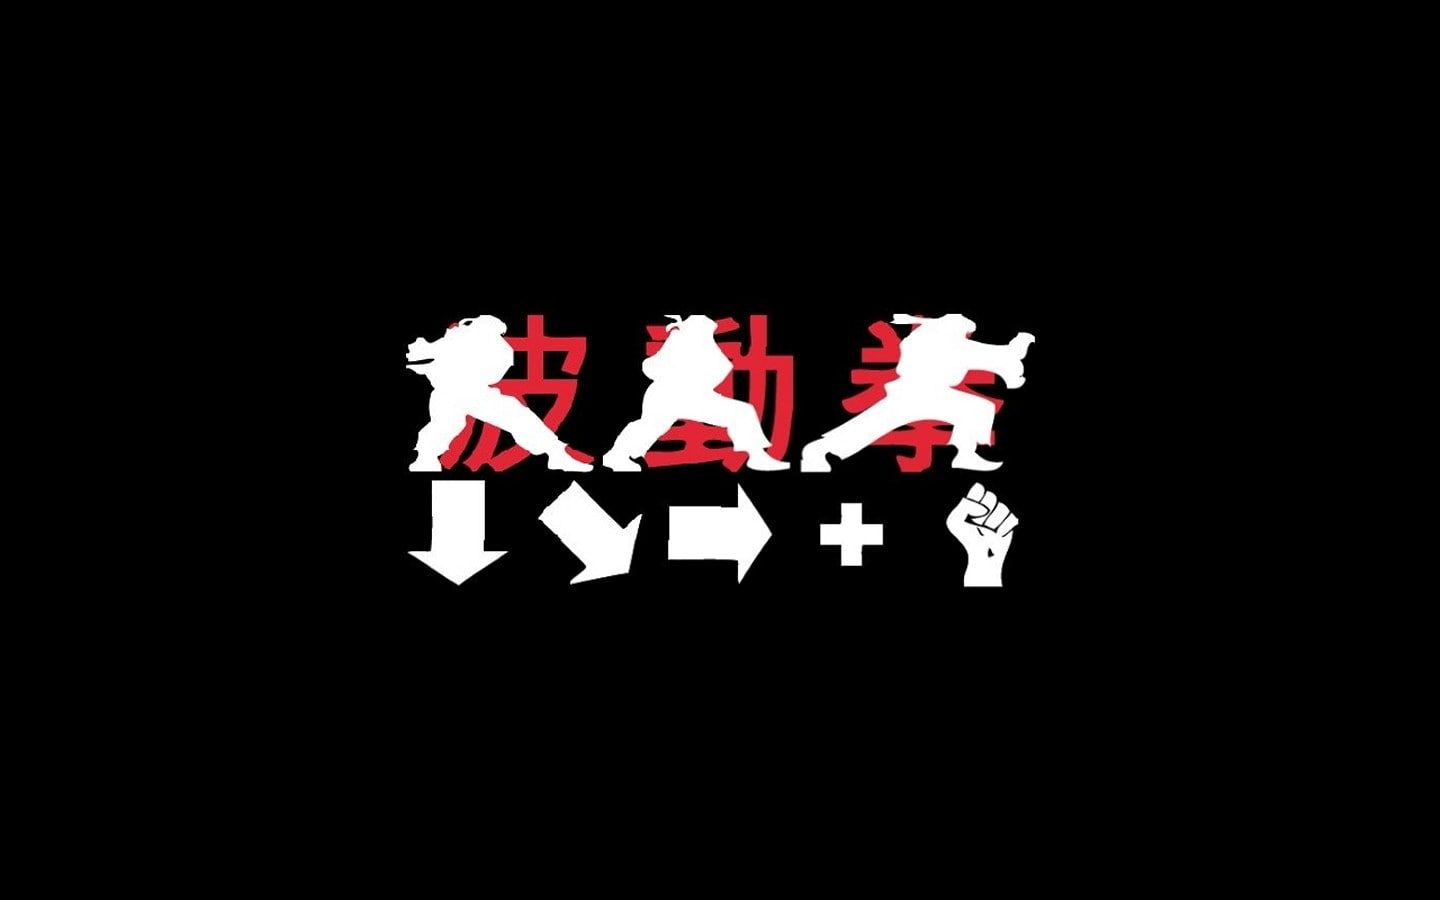 Hadouken Street Fighter P #wallpaper #hdwallpaper #desktop. Street fighter wallpaper, Ryu street fighter, Street fighter